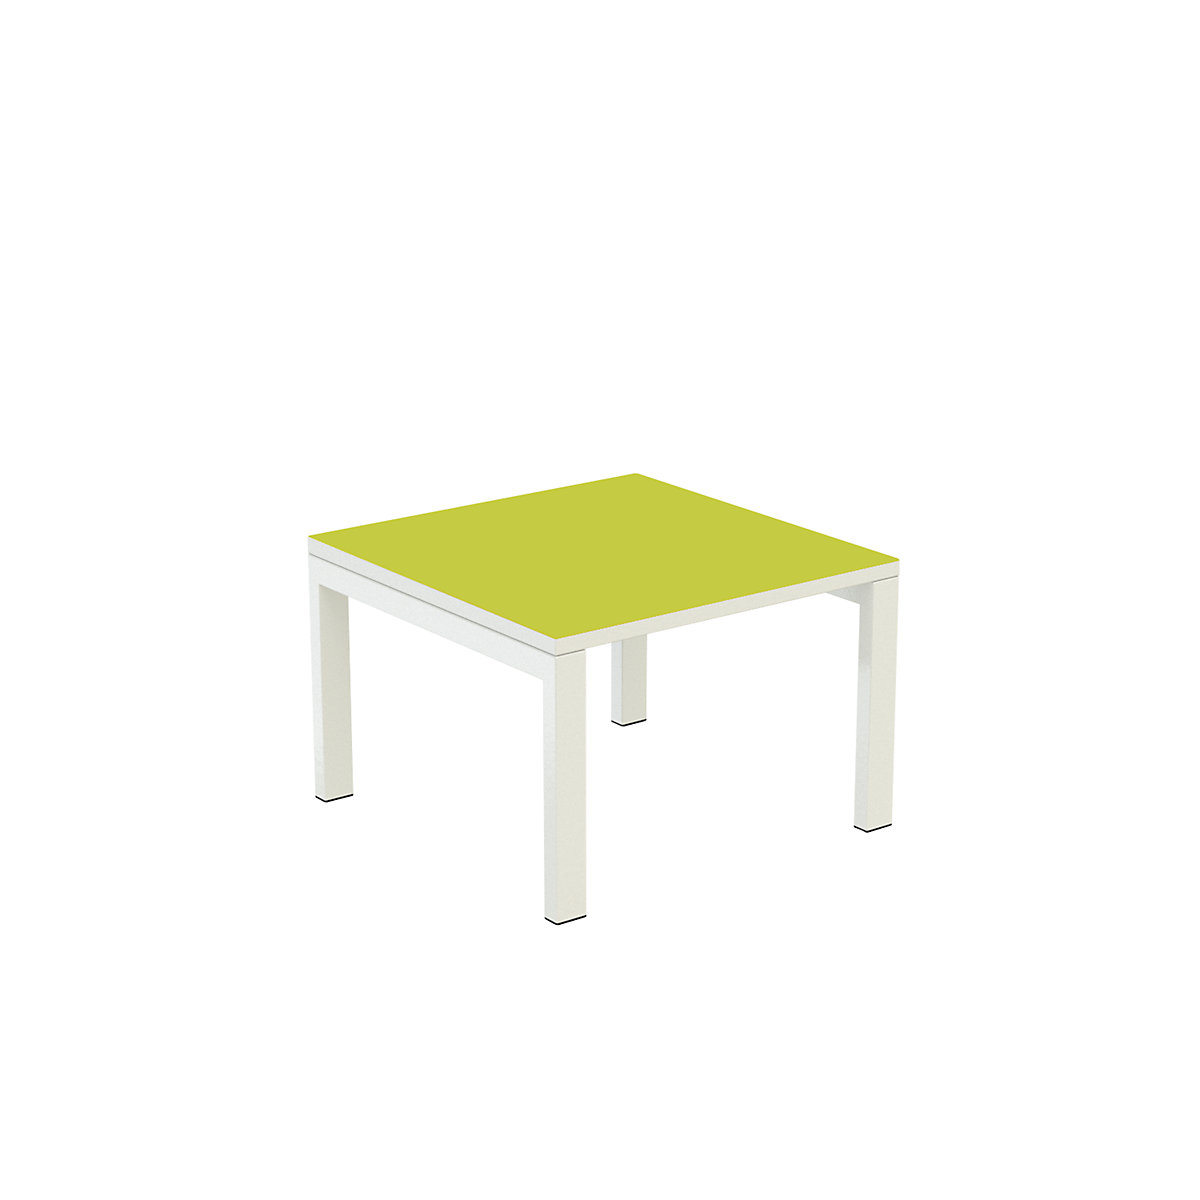 Stół dostawny easyDesk® – Paperflow, wys. x szer. x głęb. 400 x 600 x 600 mm, zielony-7